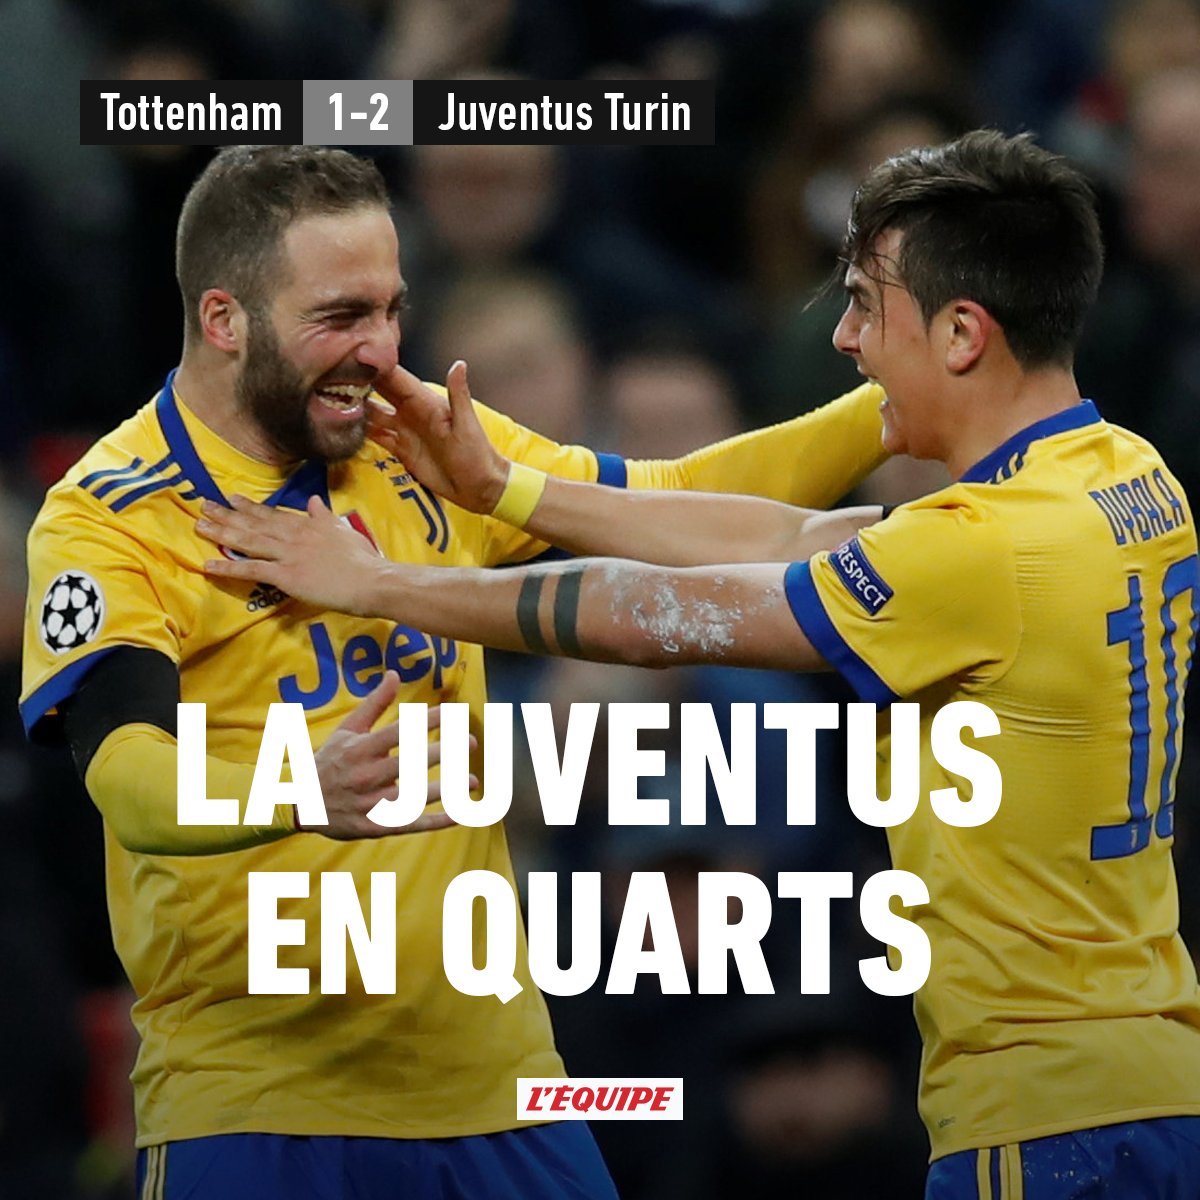 Léquipe On Twitter La Juventus Turin Se Qualifie Pour Les